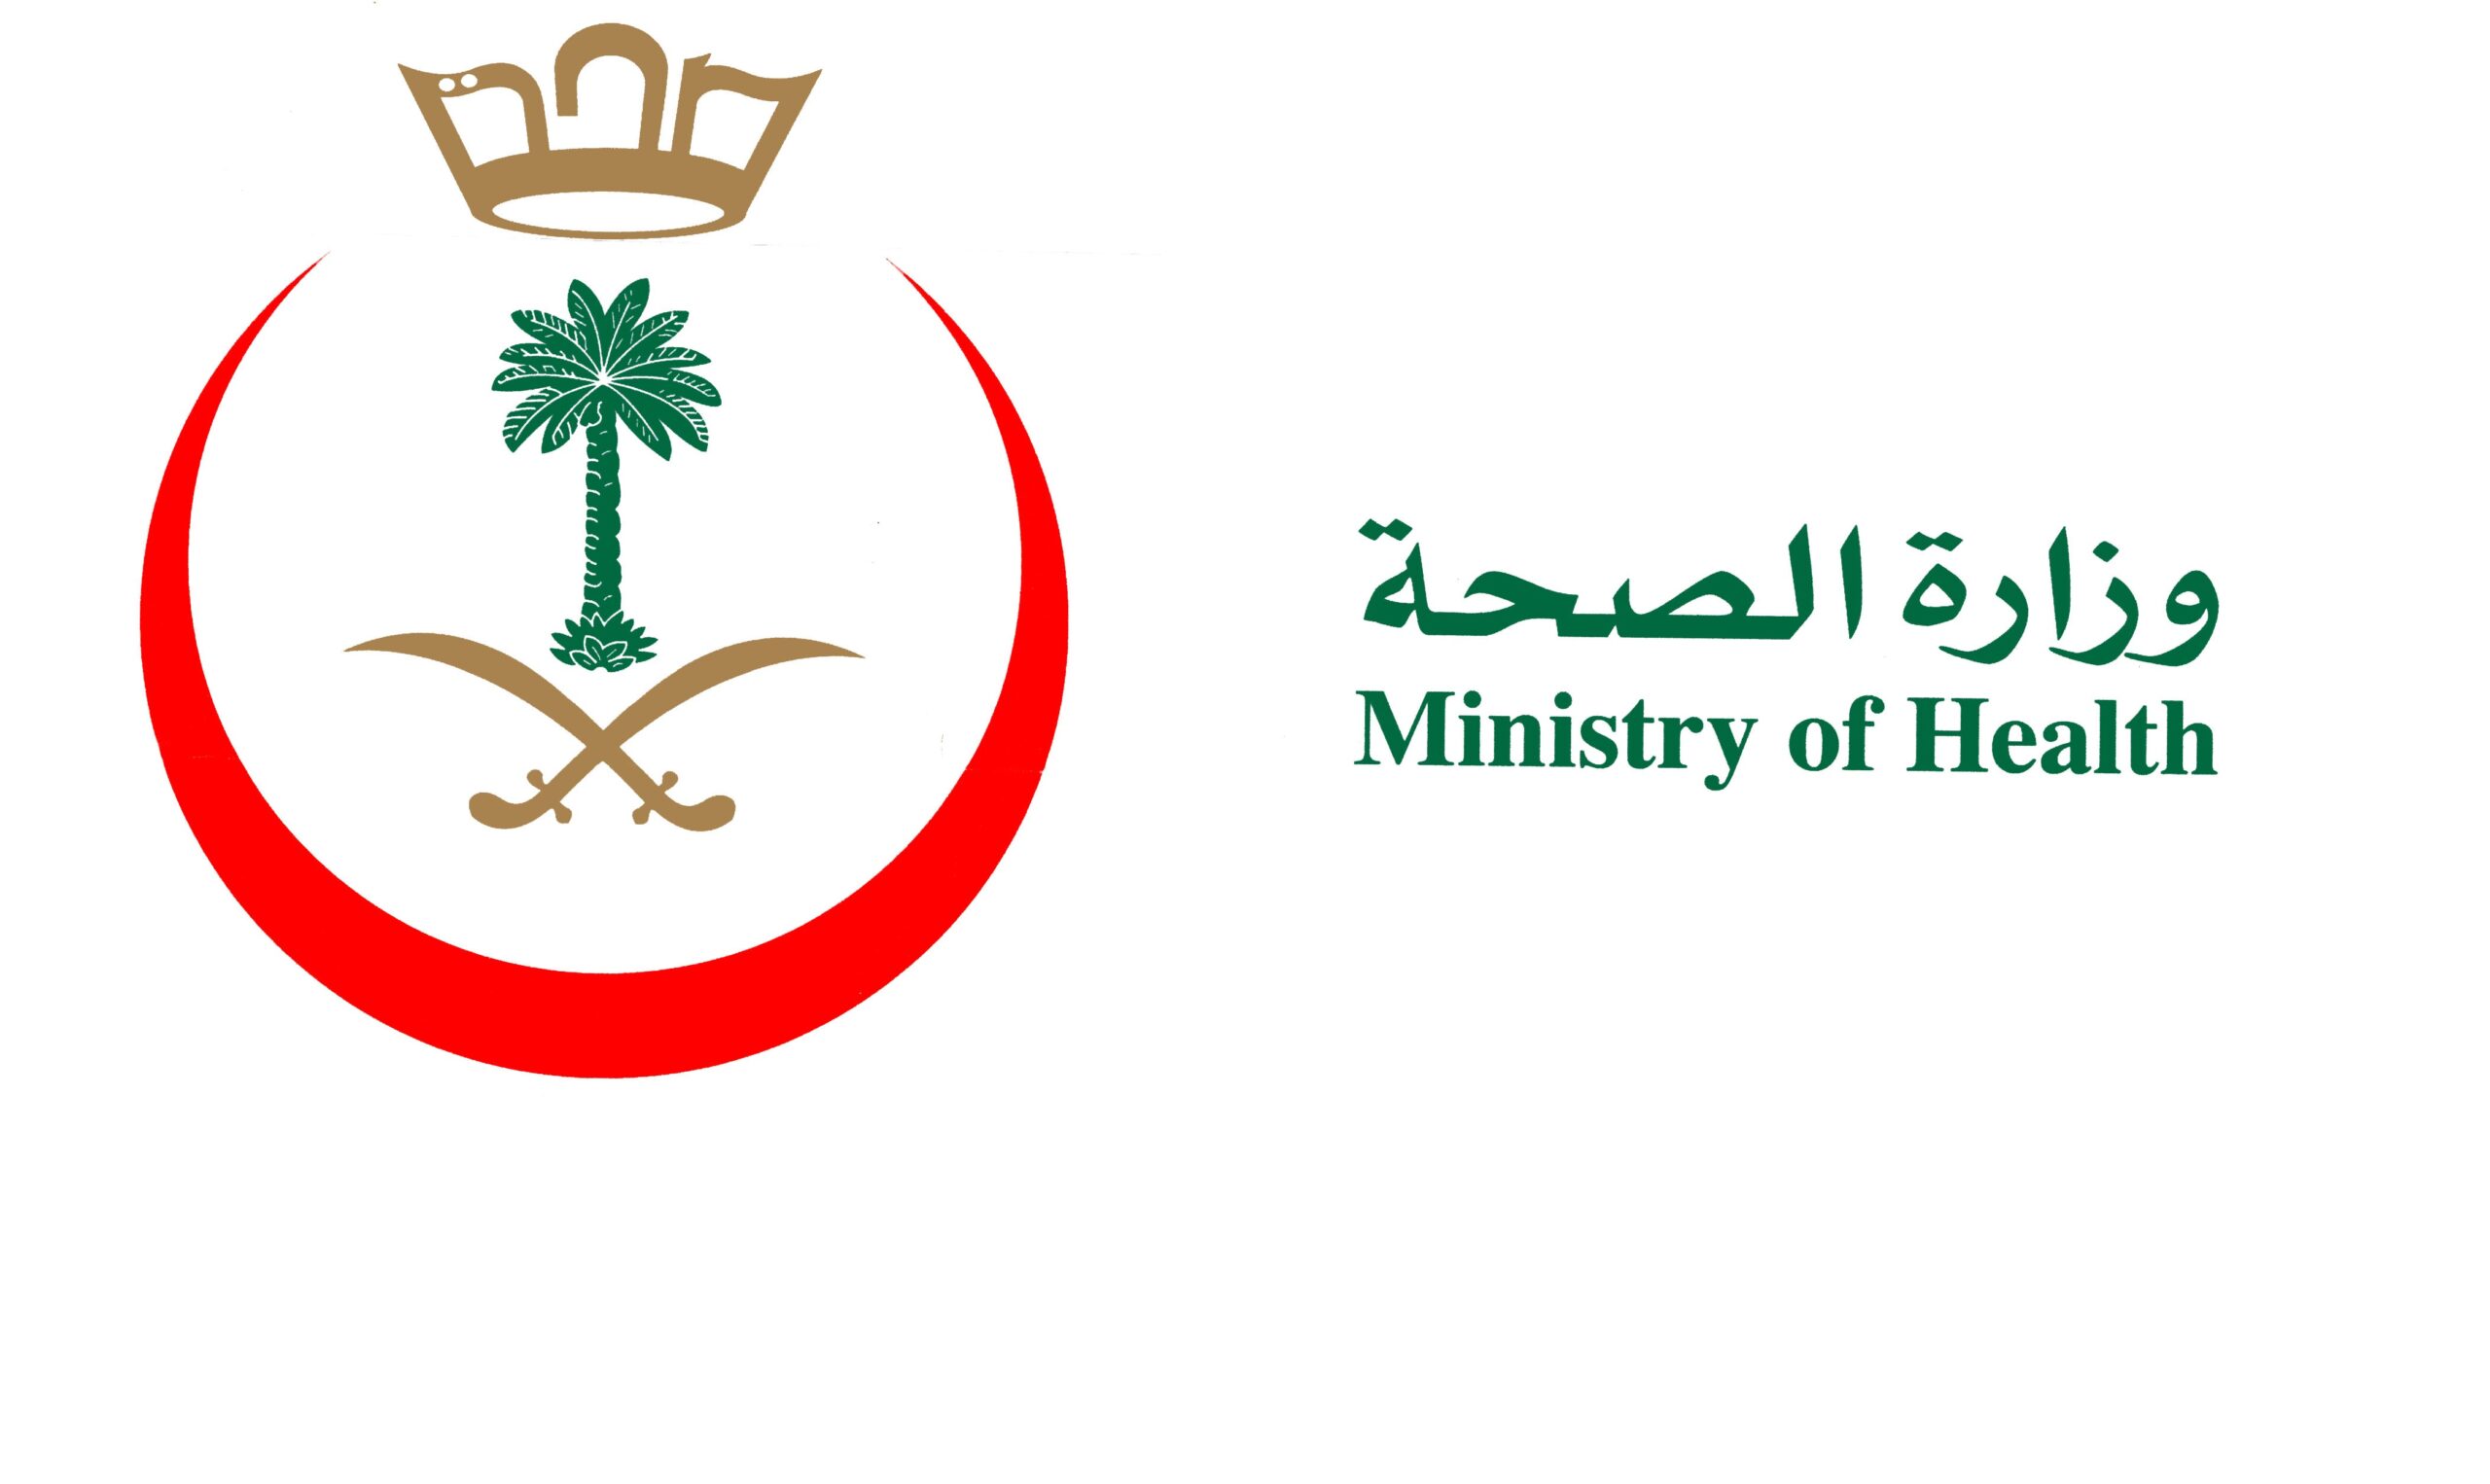 Saudi Ministry of Health logo 11 scaled - شعار وزارة الصحة السعودية png مفرغ بدون خلفية شفاف للتصميم